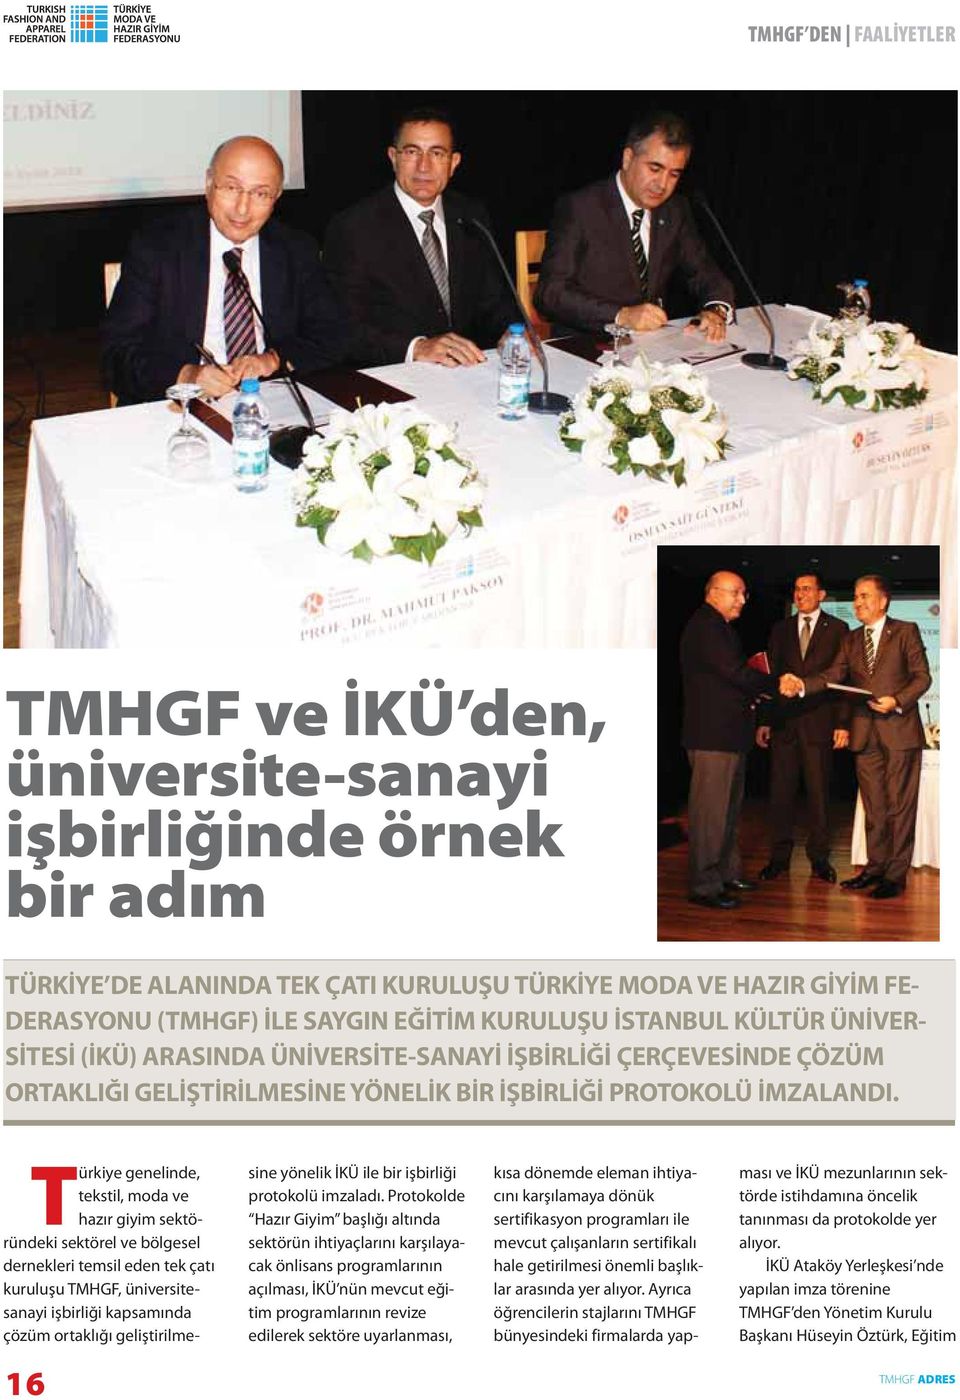 Türkiye genelinde, tekstil, moda ve hazır giyim sektöründeki sektörel ve bölgesel dernekleri temsil eden tek çatı kuruluşu TMHGF, üniversitesanayi işbirliği kapsamında çözüm ortaklığı